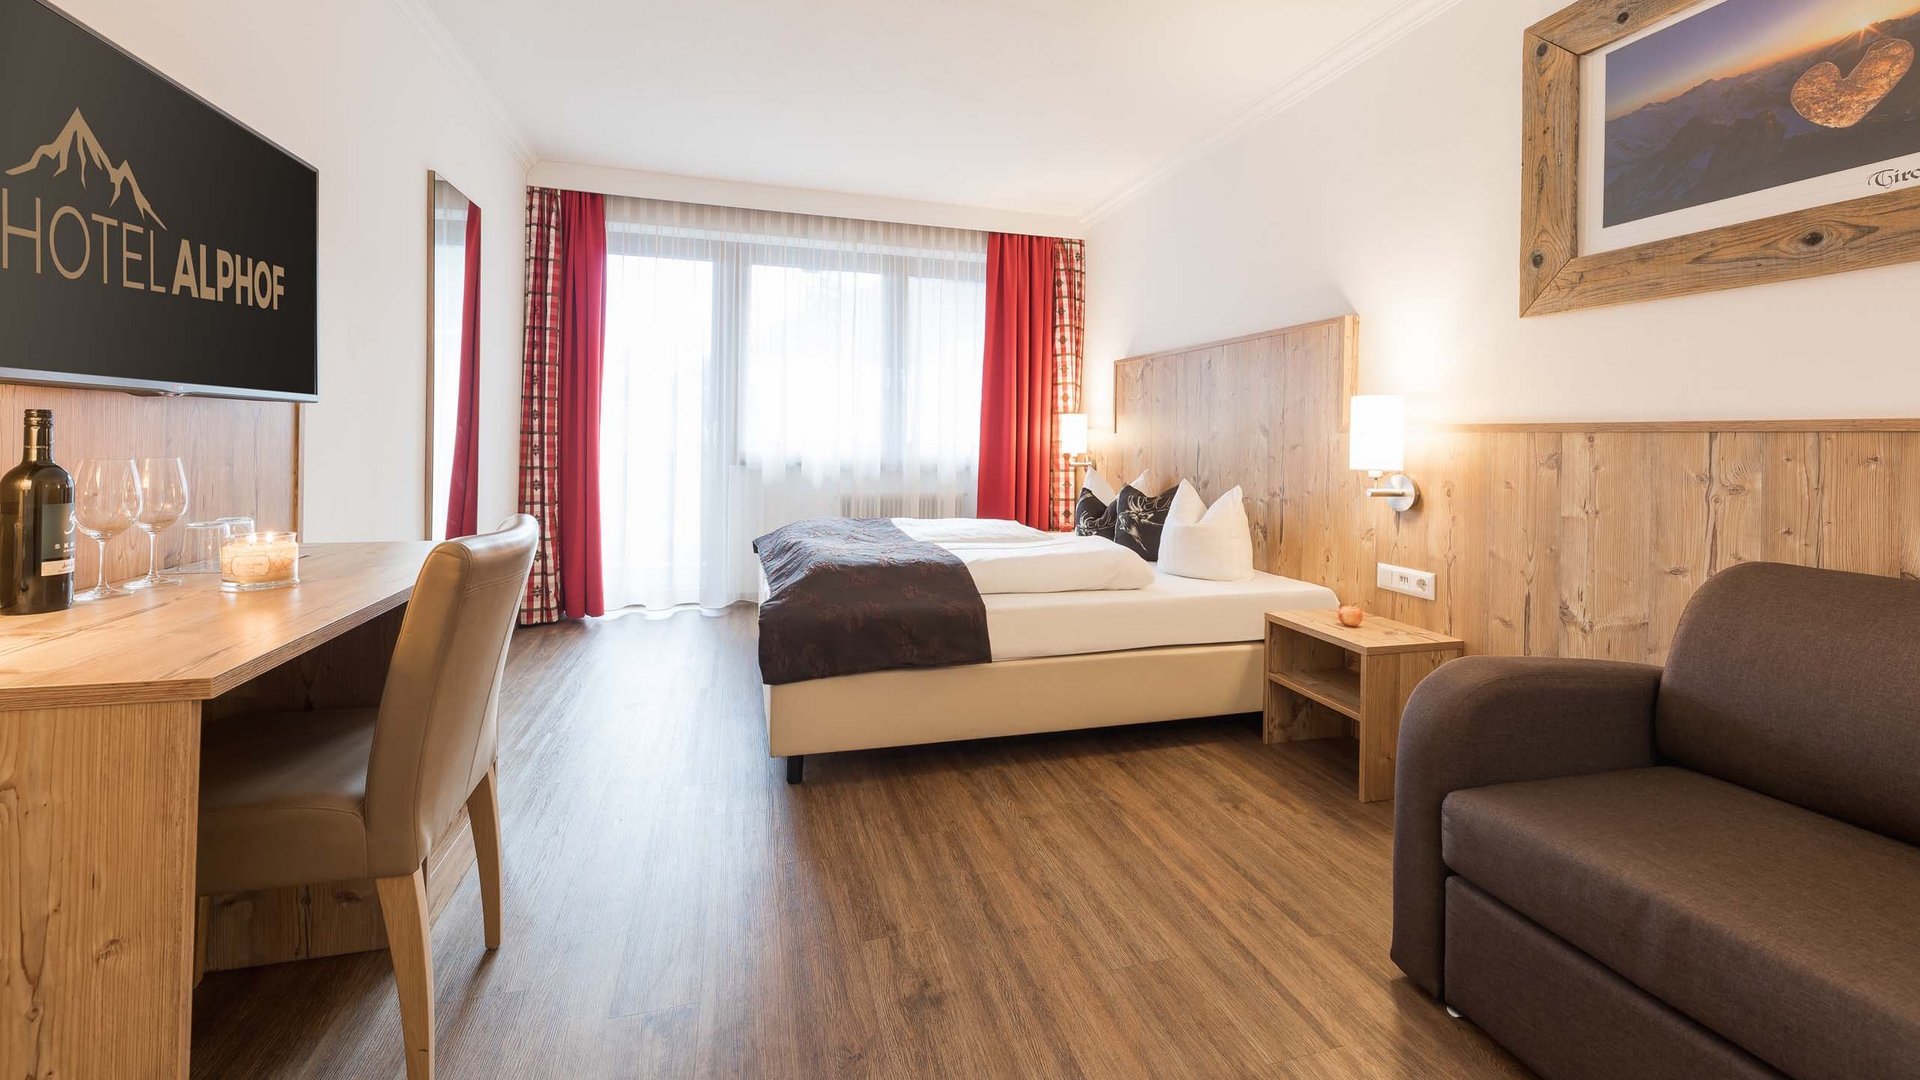 Your 4-star hotel in Stubaital: the Alphof awaits!